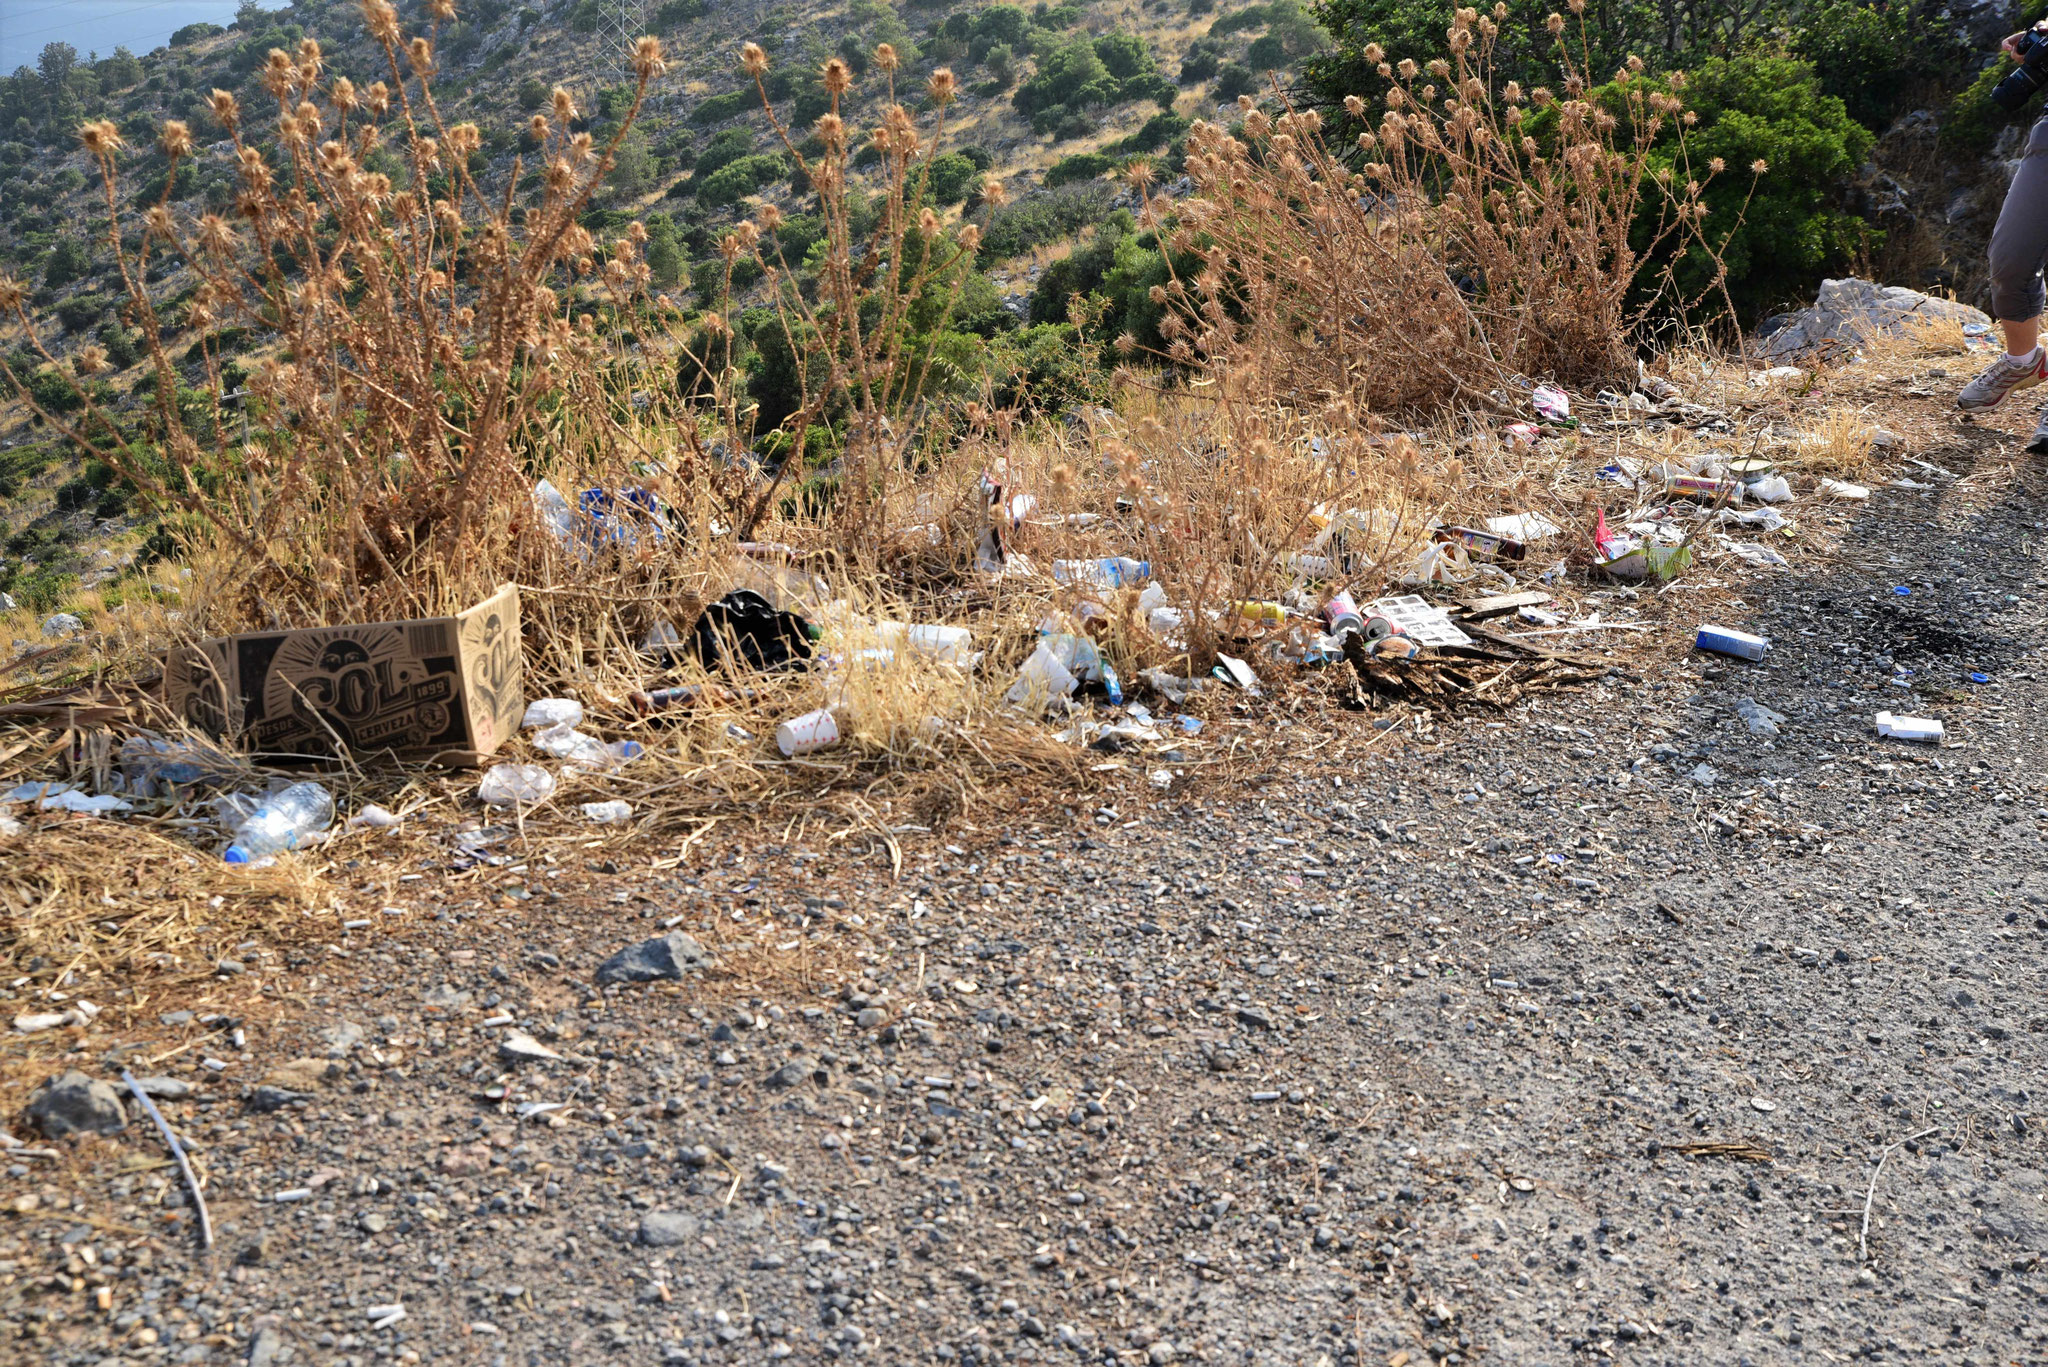 Leider unschön - Müll verschandelt die Landschaft